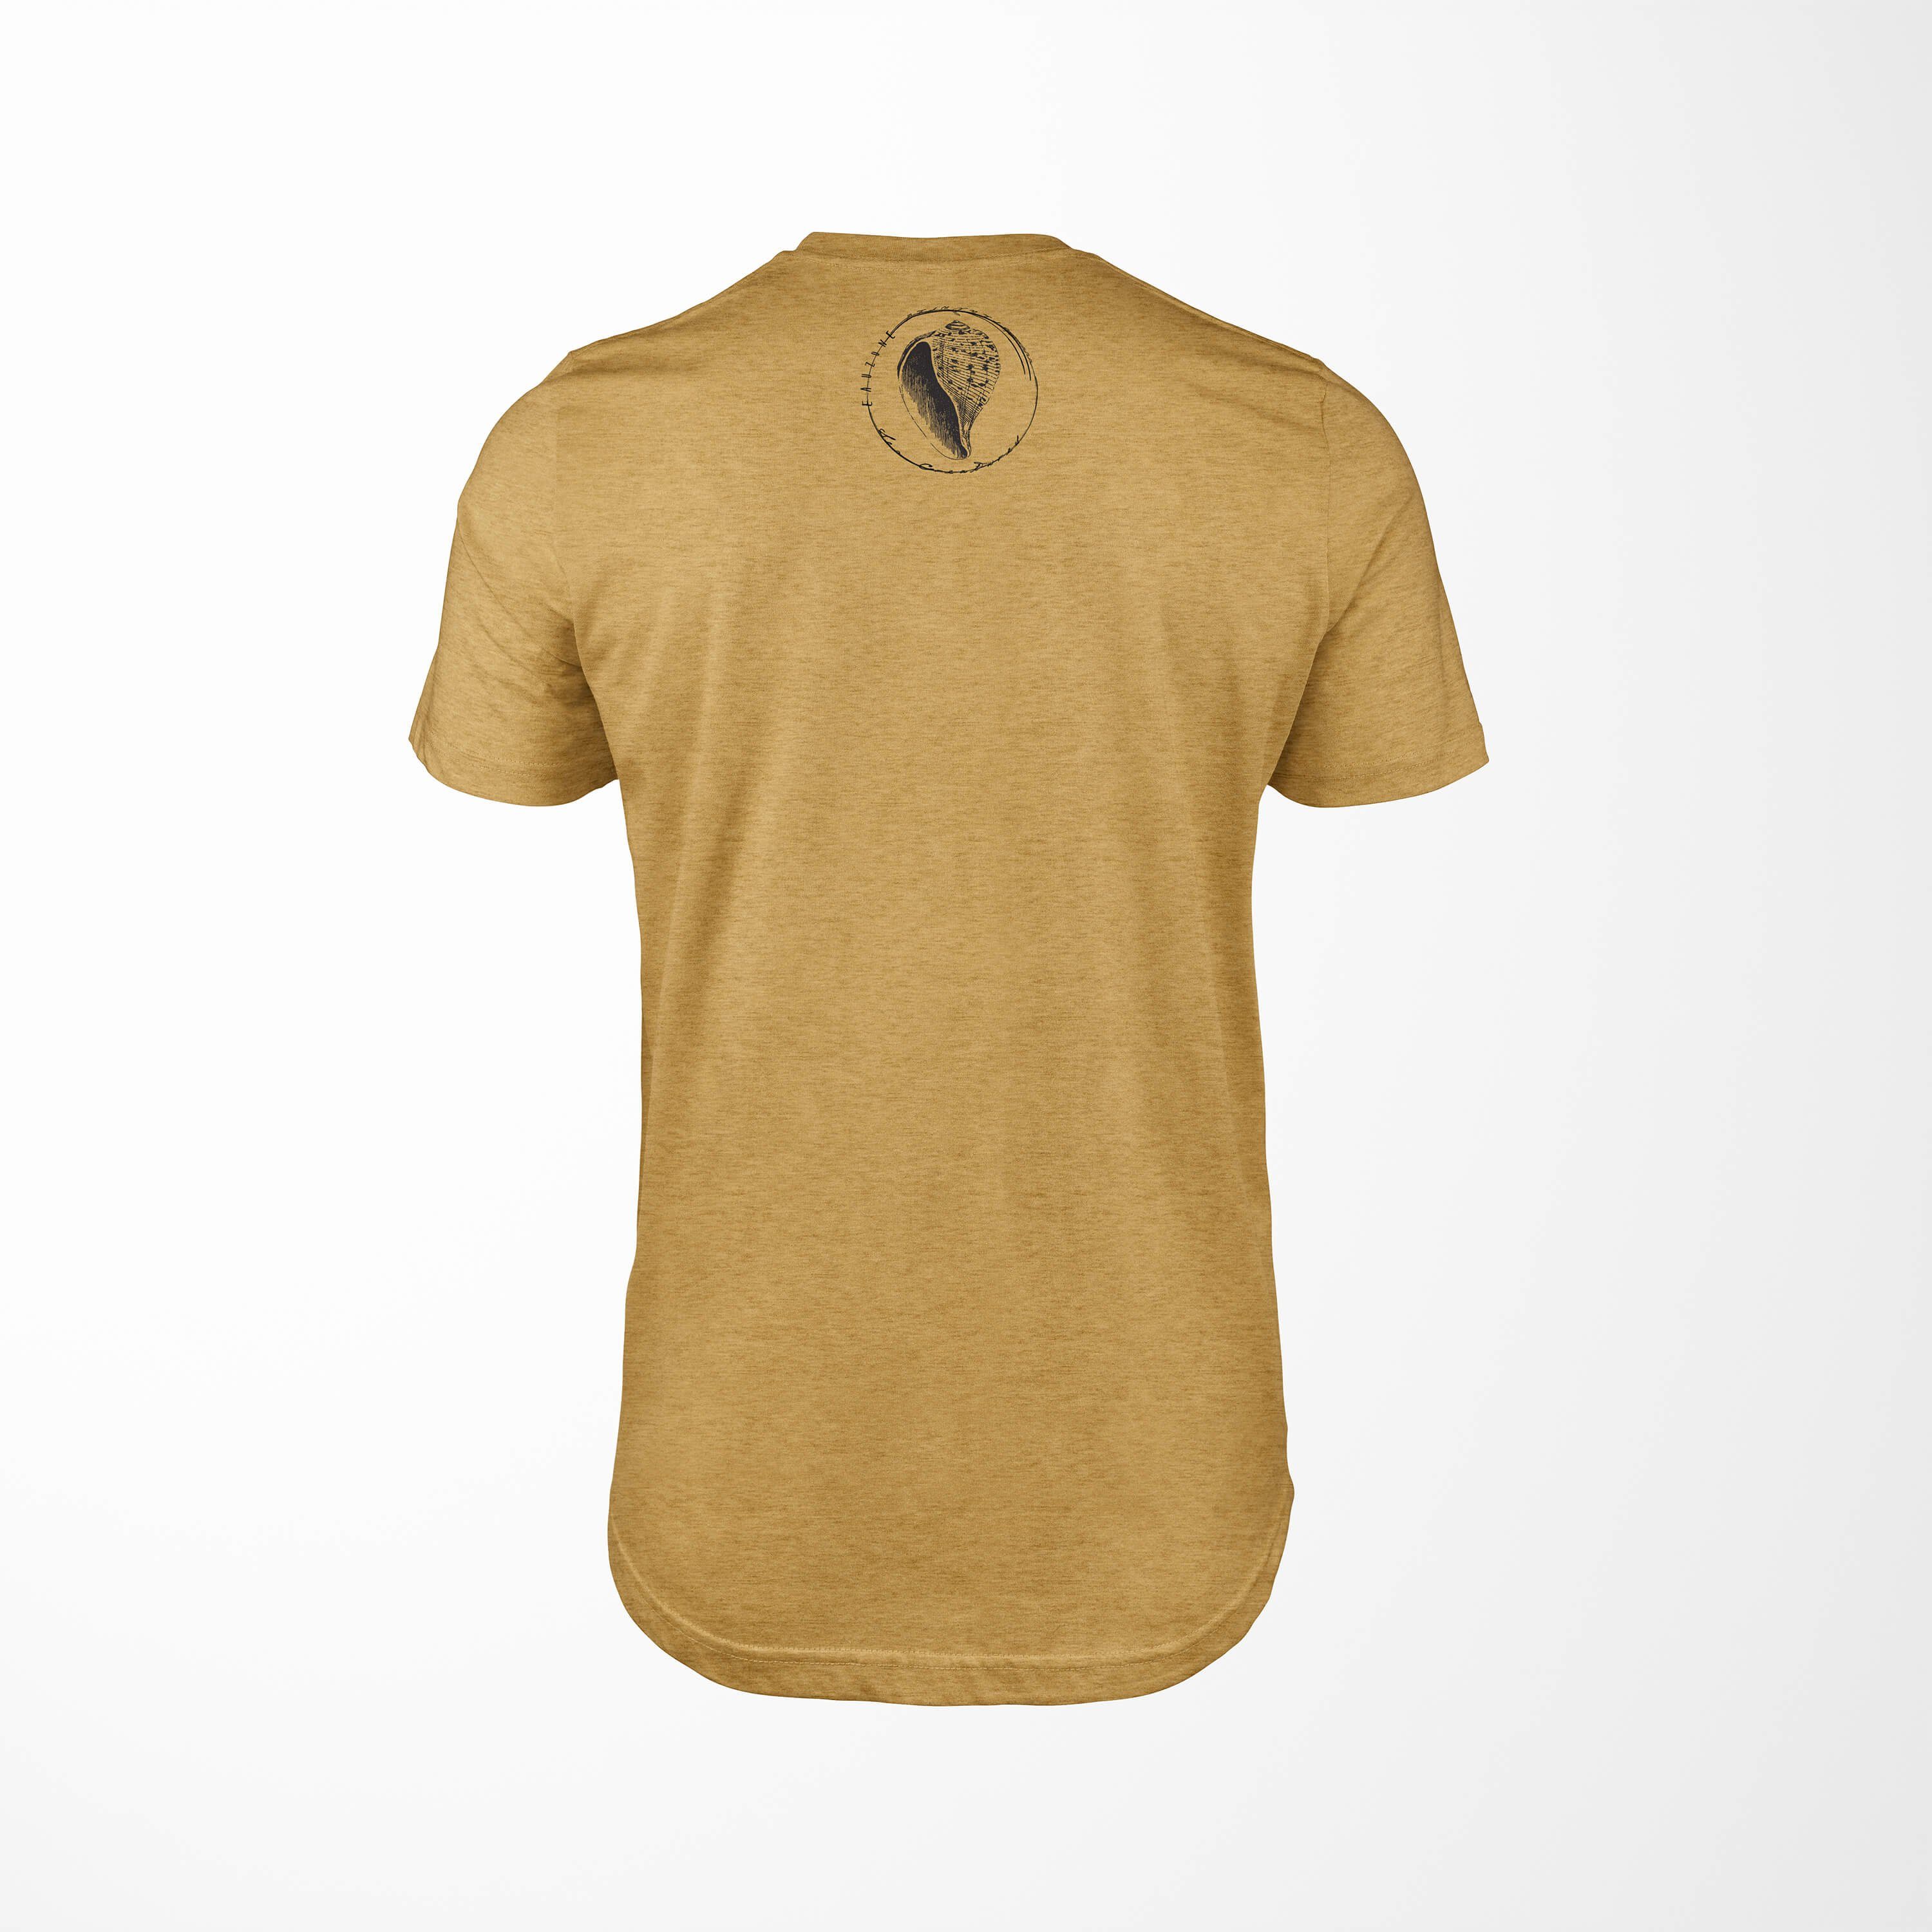 Serie: - T-Shirt und sportlicher 057 / feine Fische Schnitt Gold Antique T-Shirt Tiefsee Sinus Sea Art Struktur Creatures, Sea